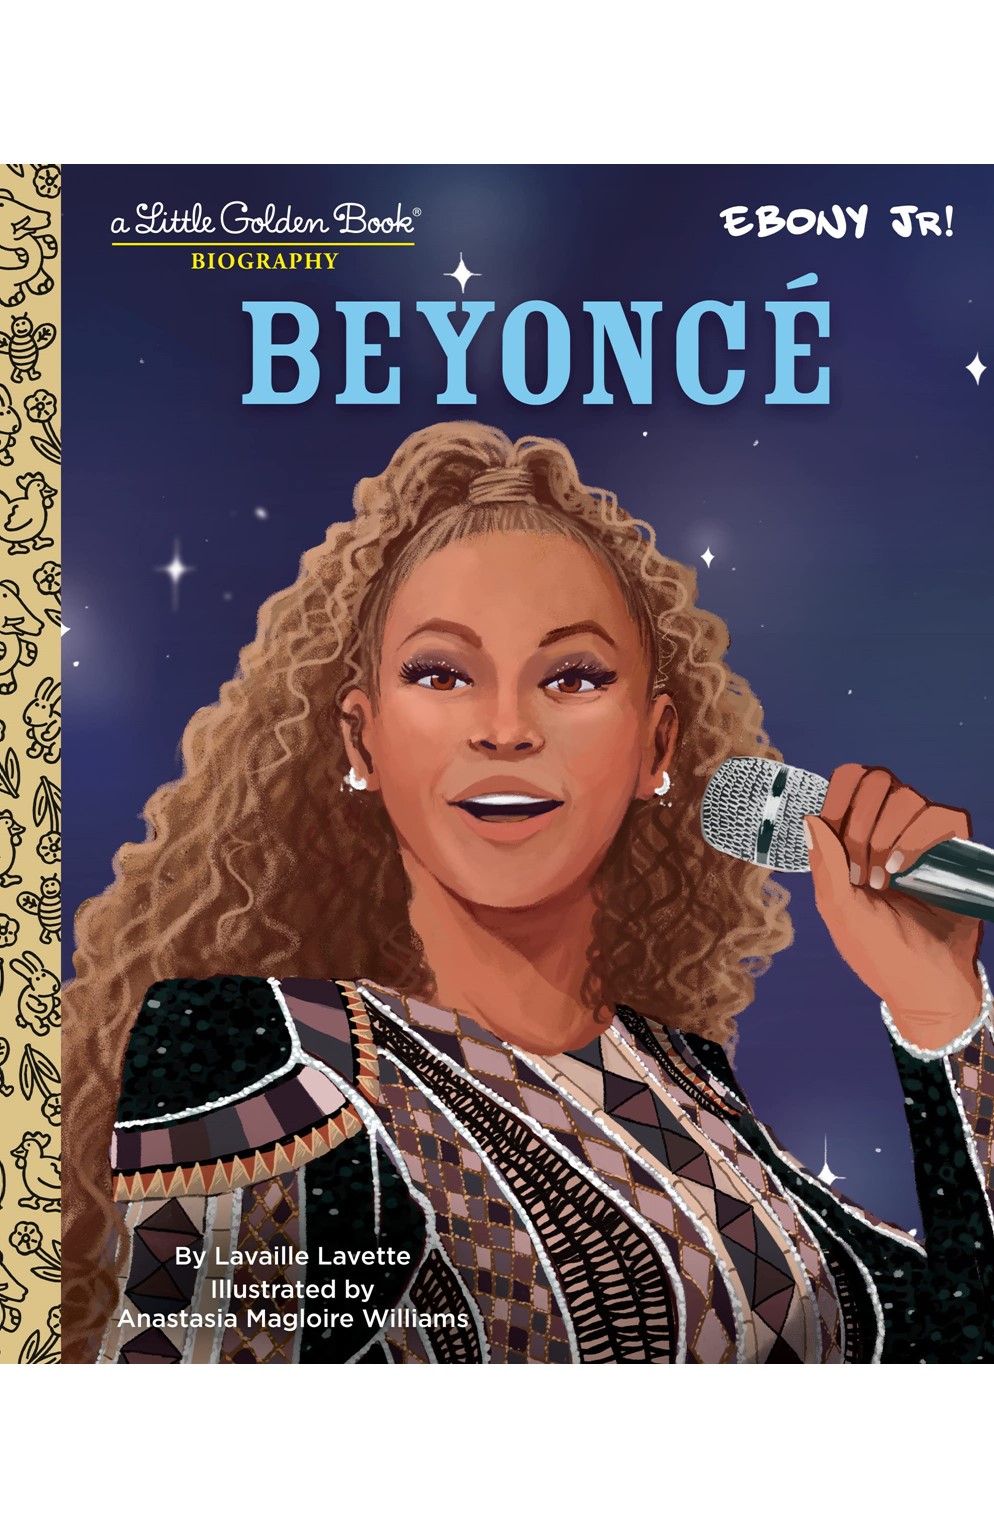 Beyonce A Little Golden Book Biography